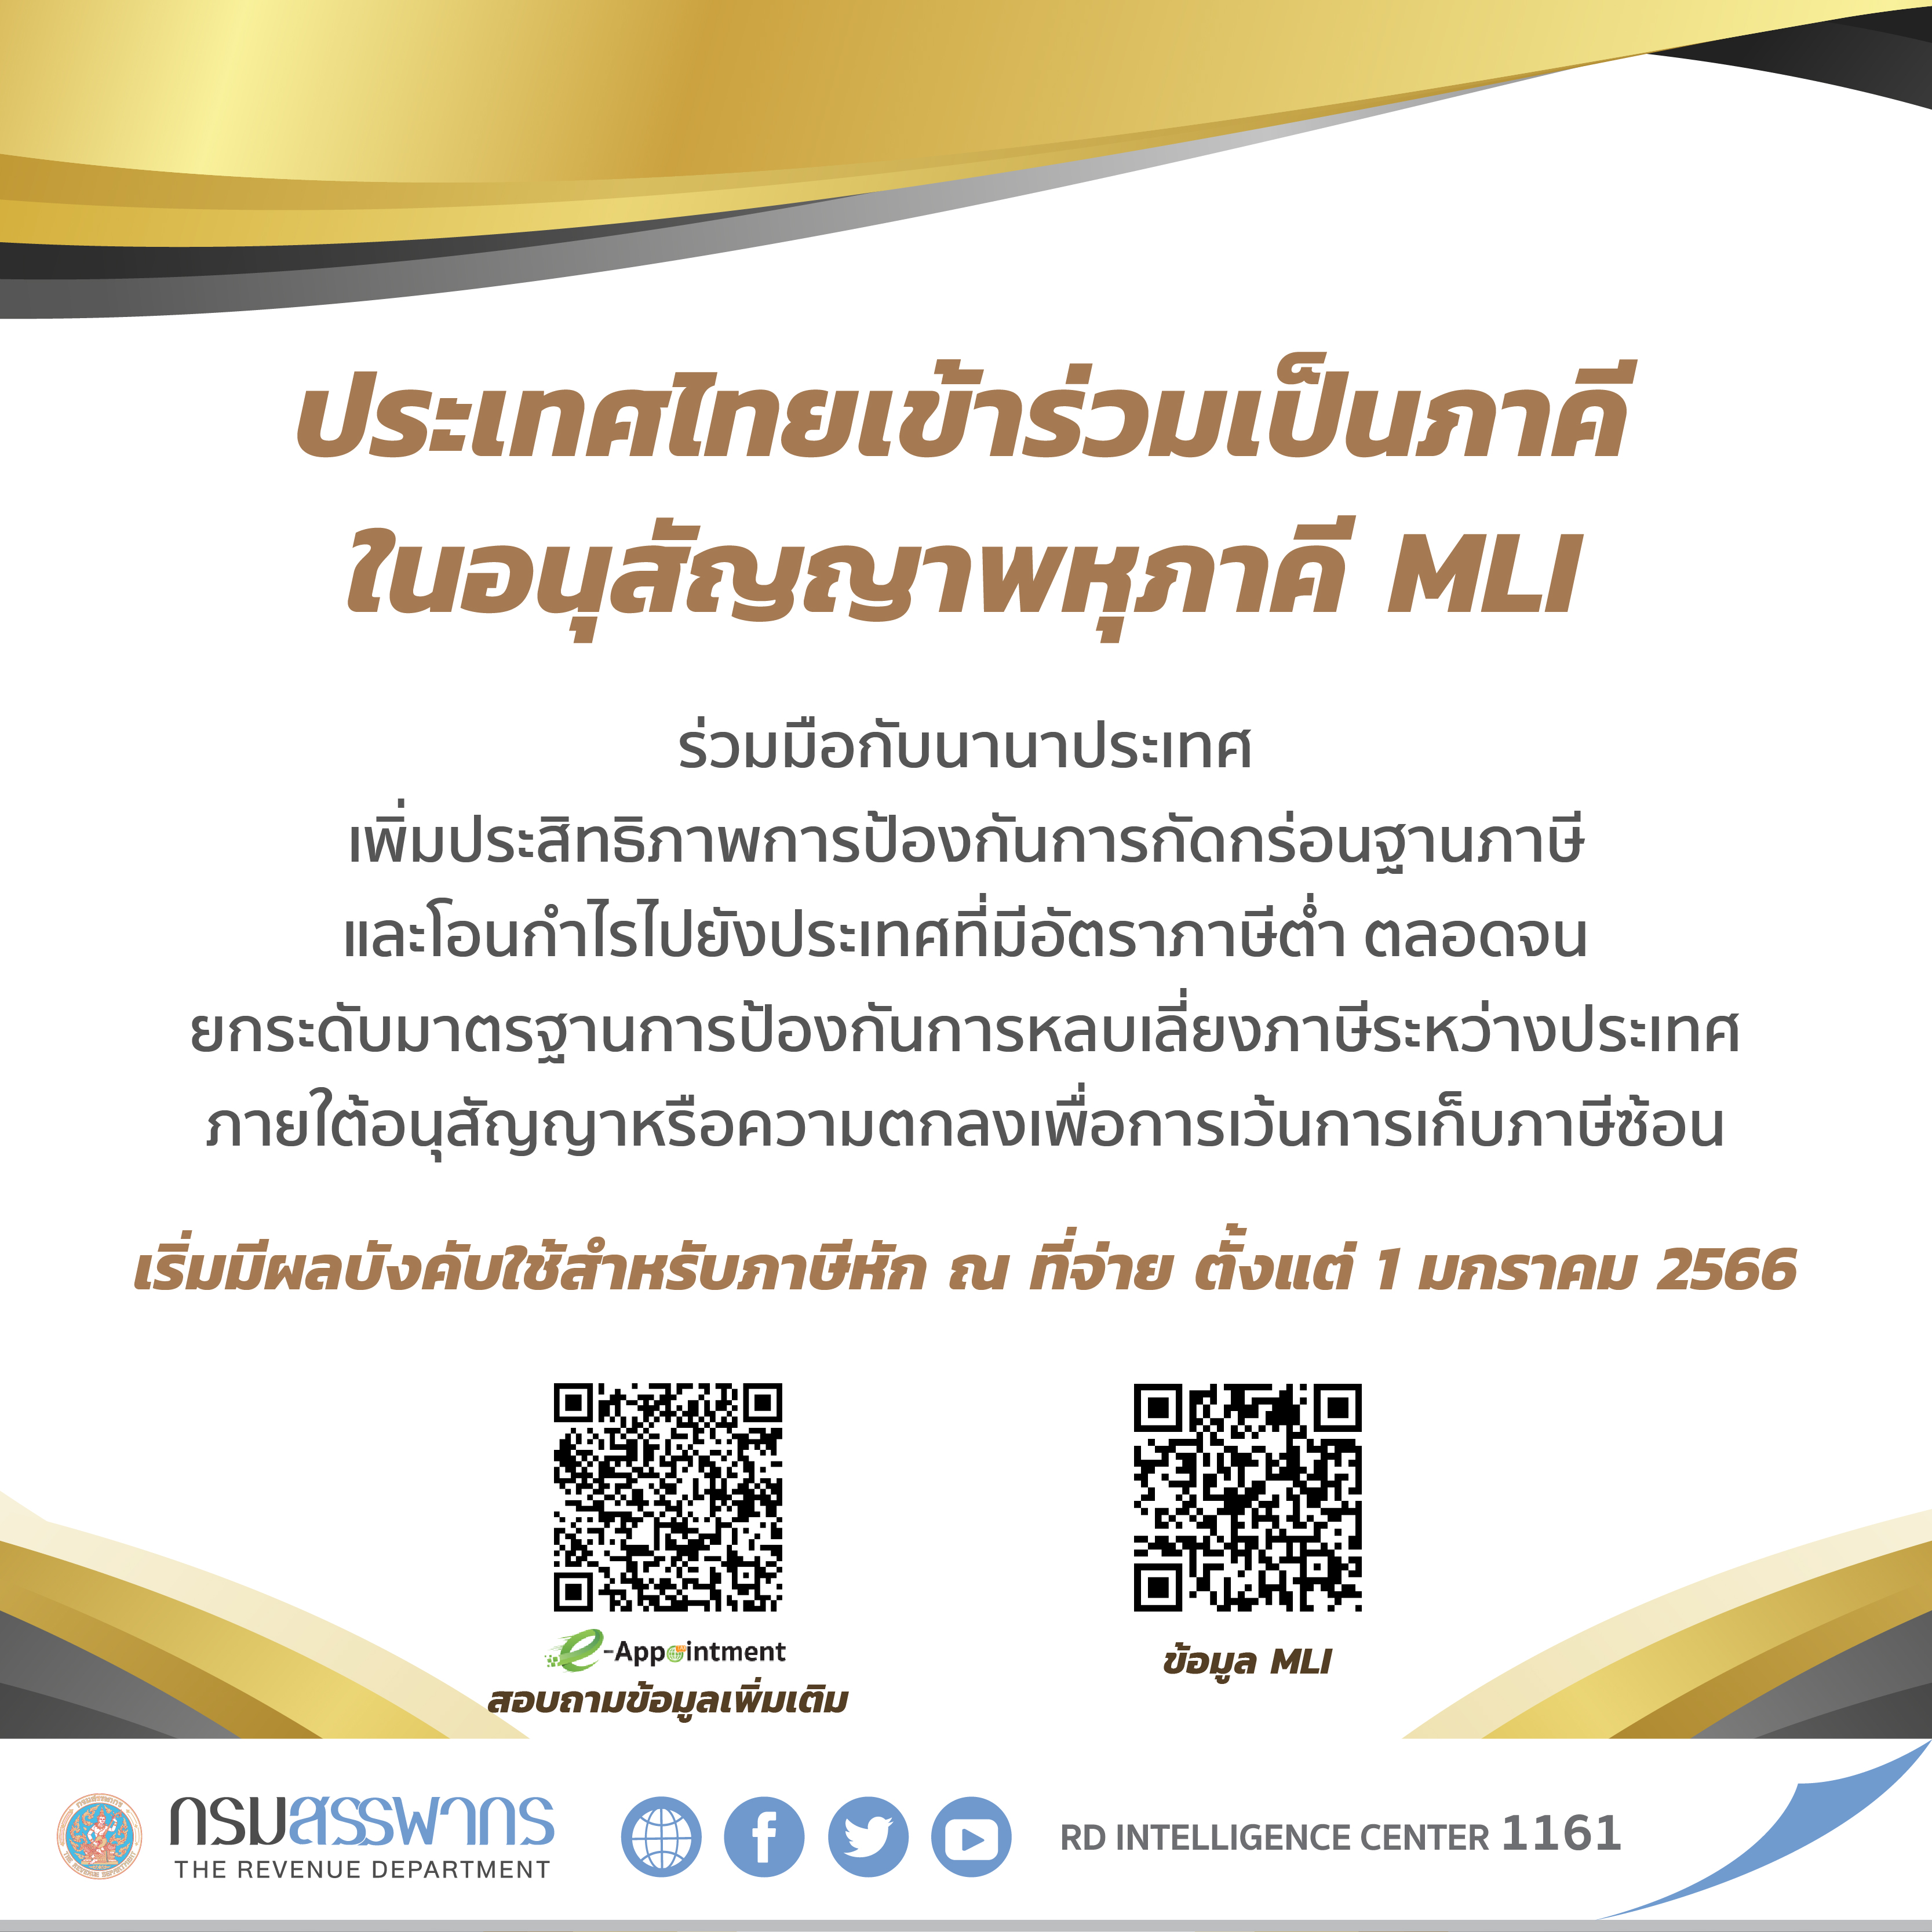 ประเทศไทยเข้าร่วมเป็นภาคีในอนุสัญญาพหุภาคีฯ MLI เข้าร่วมป้องกันการกัดกร่อนฐานภาษี เริ่มมีผลบังคับใช้สำหรับภาษีหัก ณ ที่จ่าย ตั้งแต่ 1 มกราคม 2566